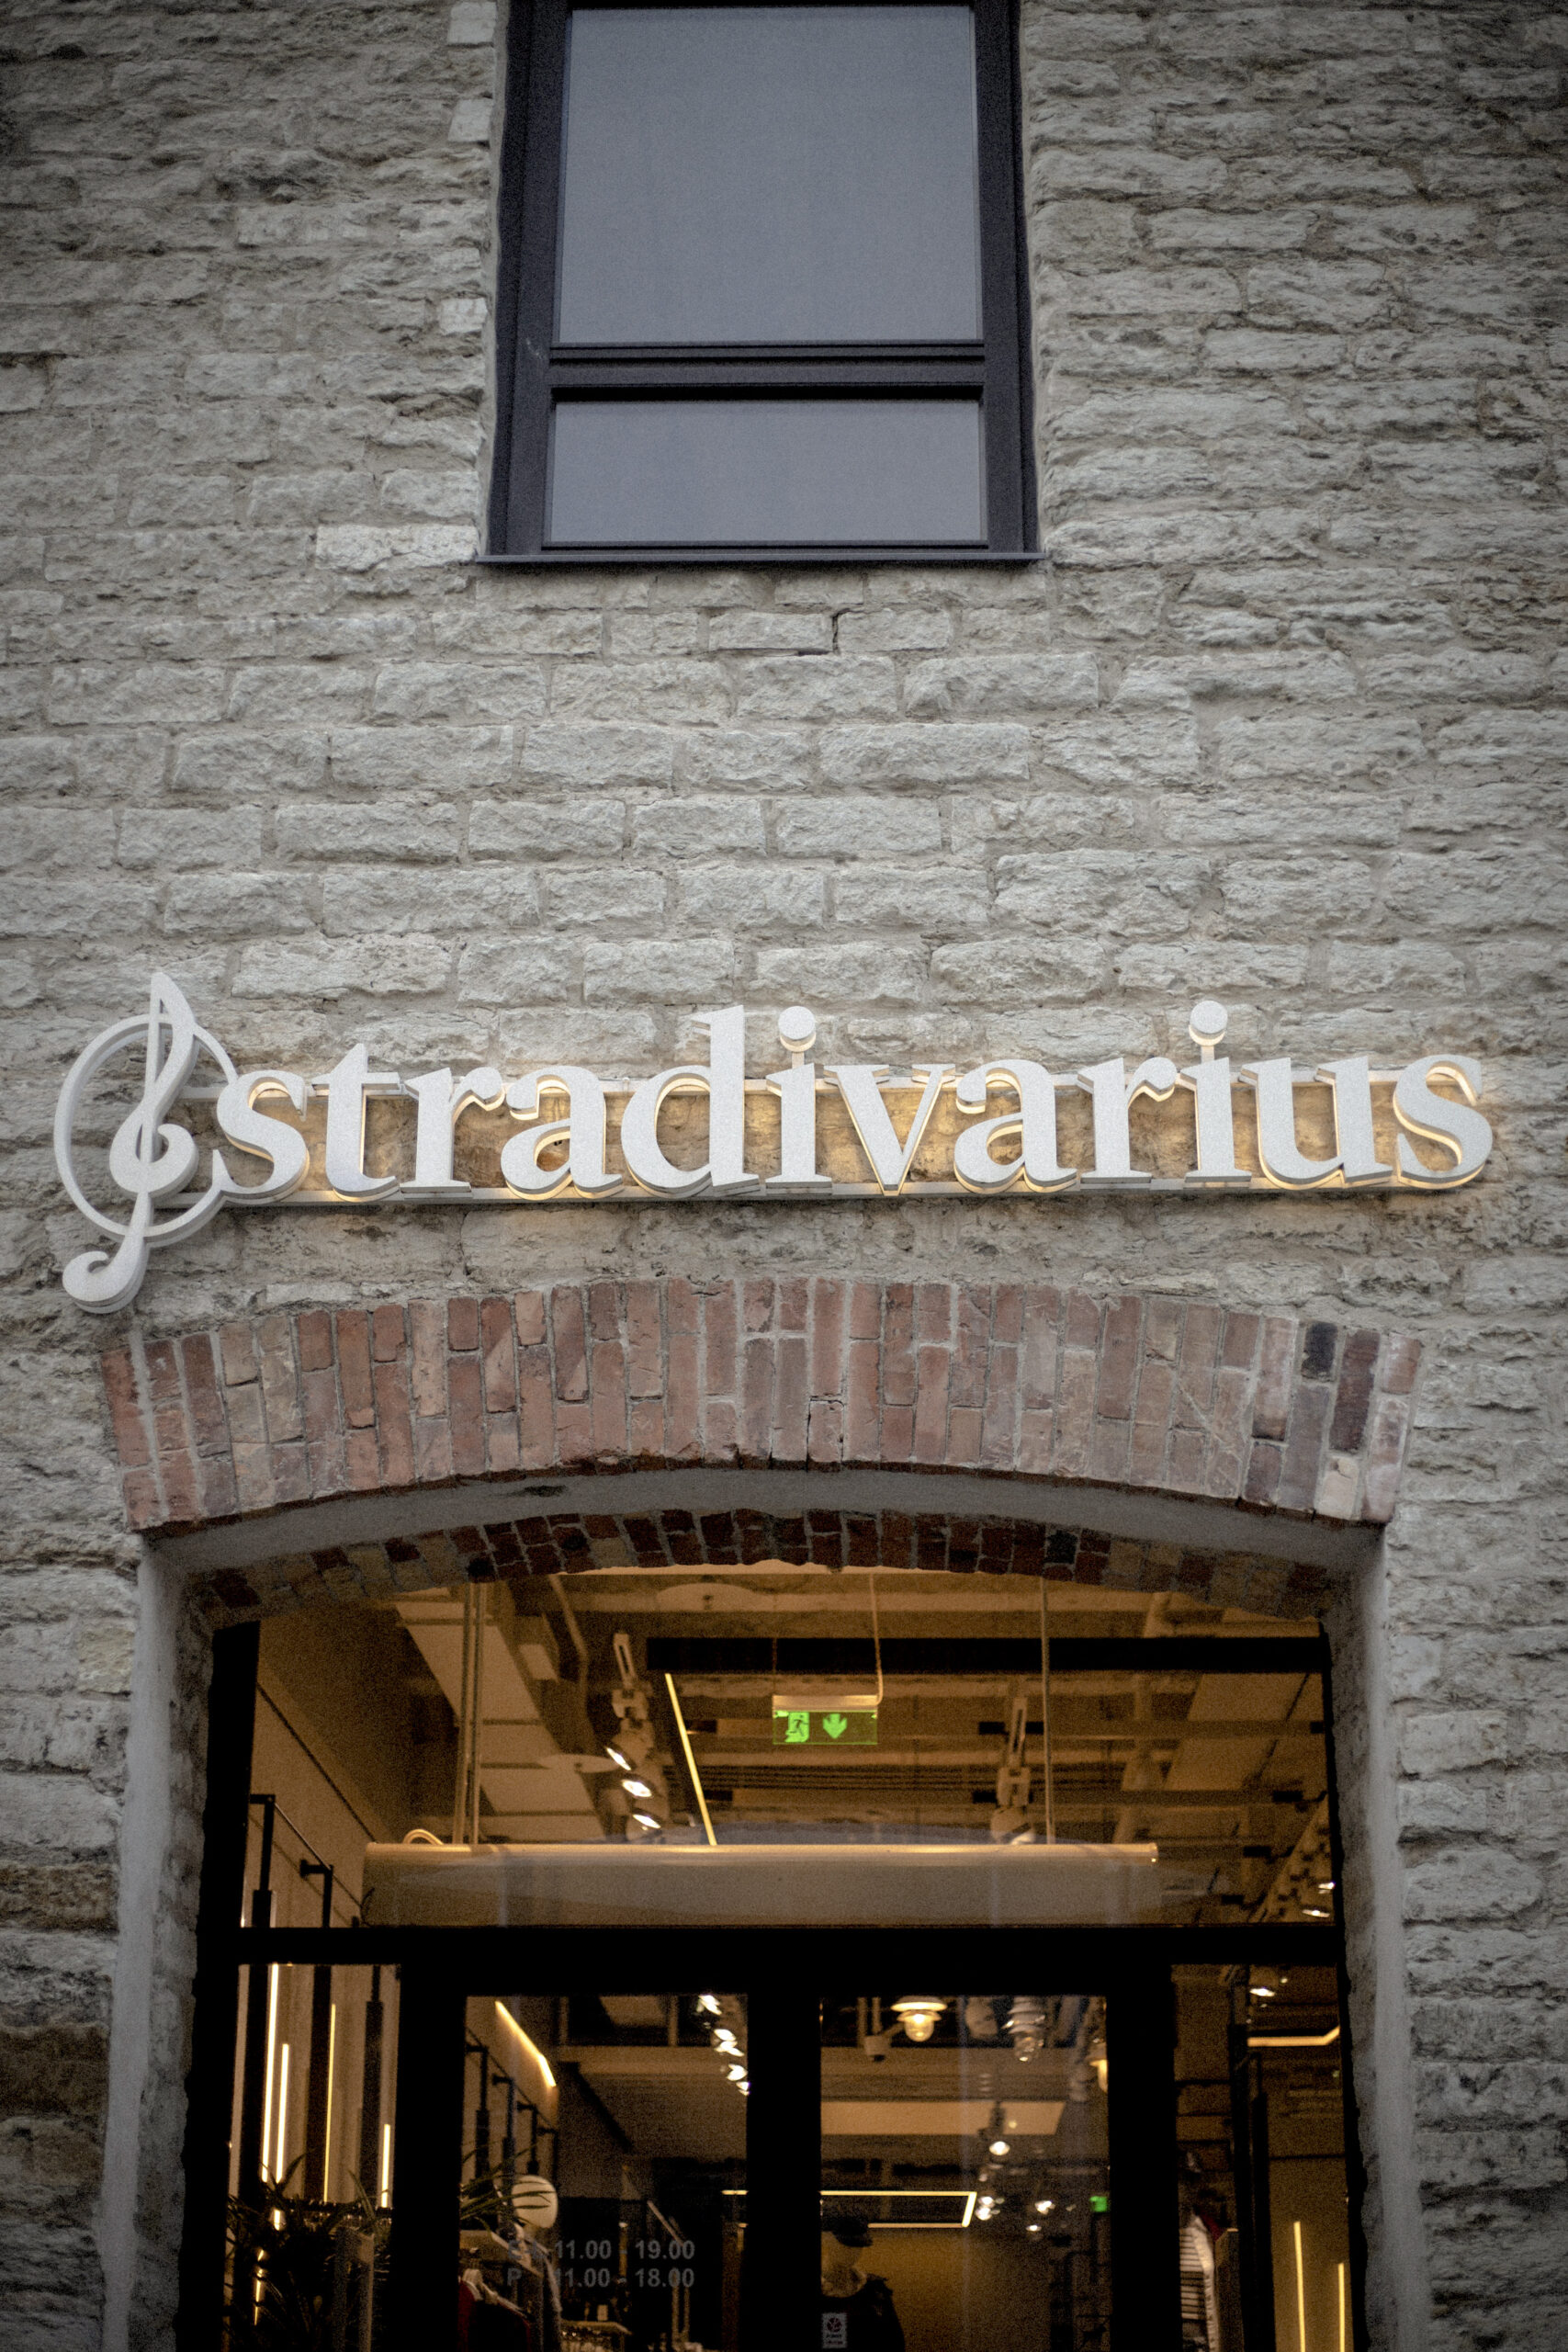 Image - Stradivarius